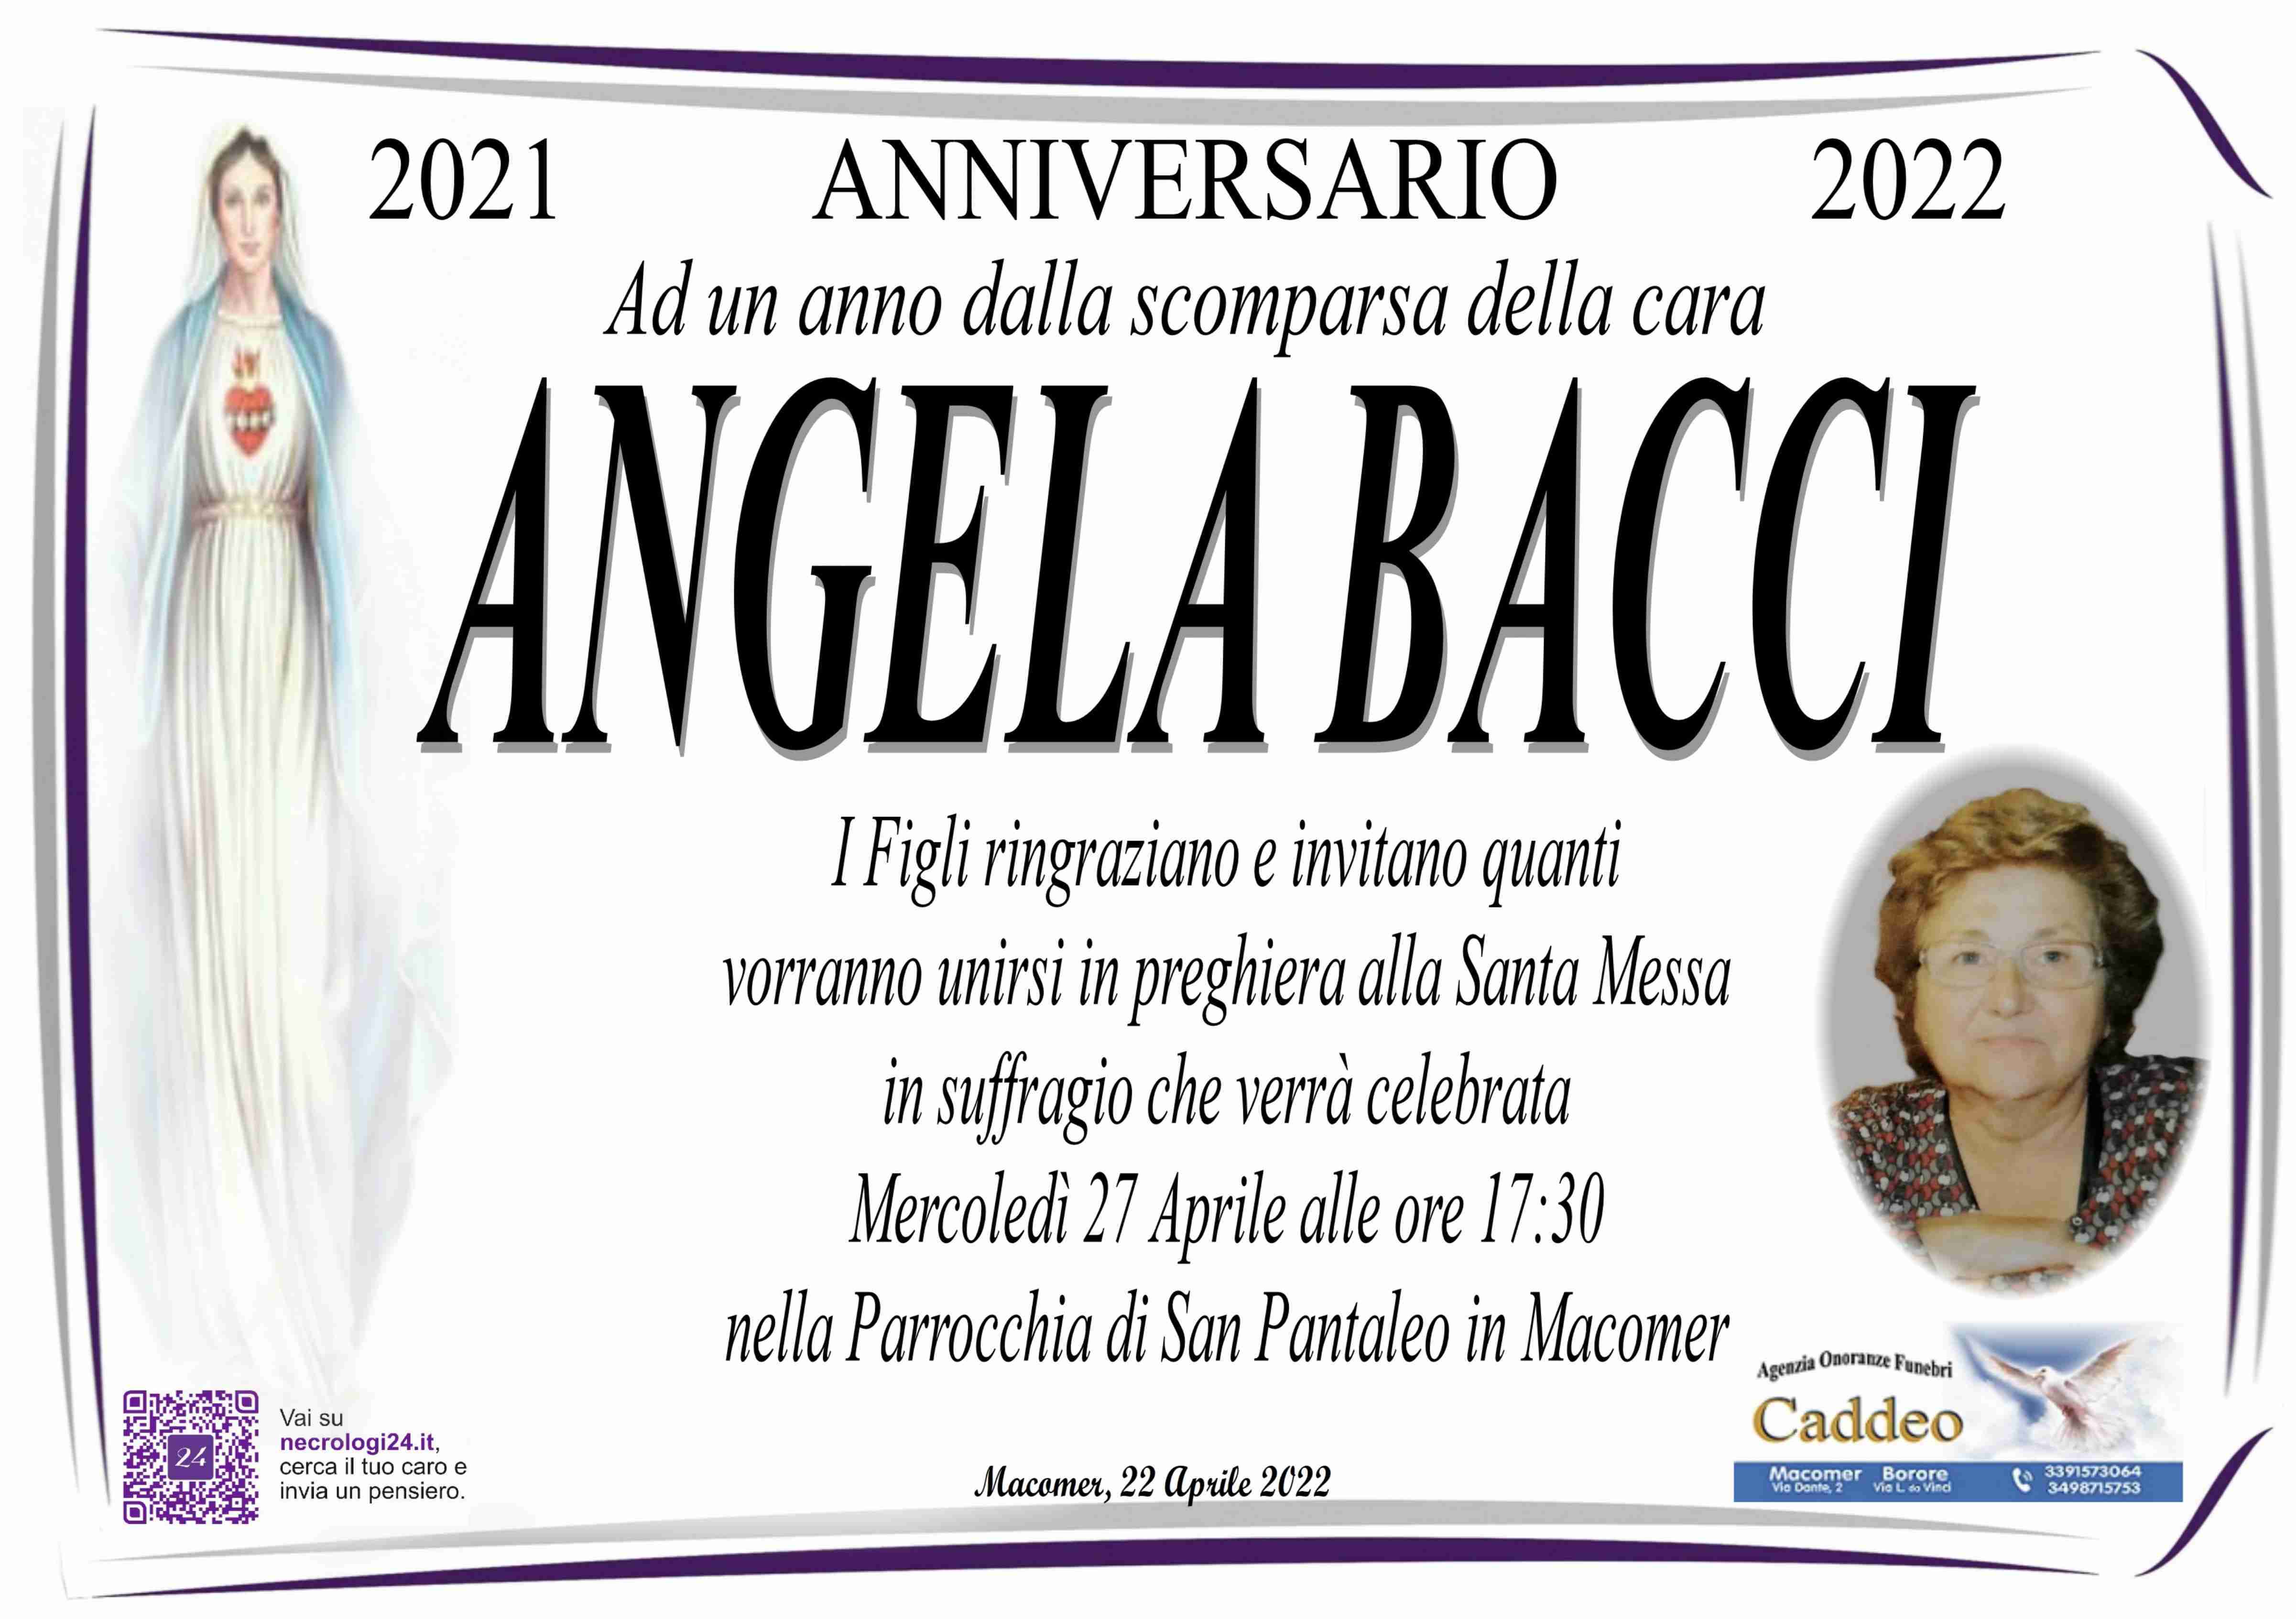 Angela Bacci